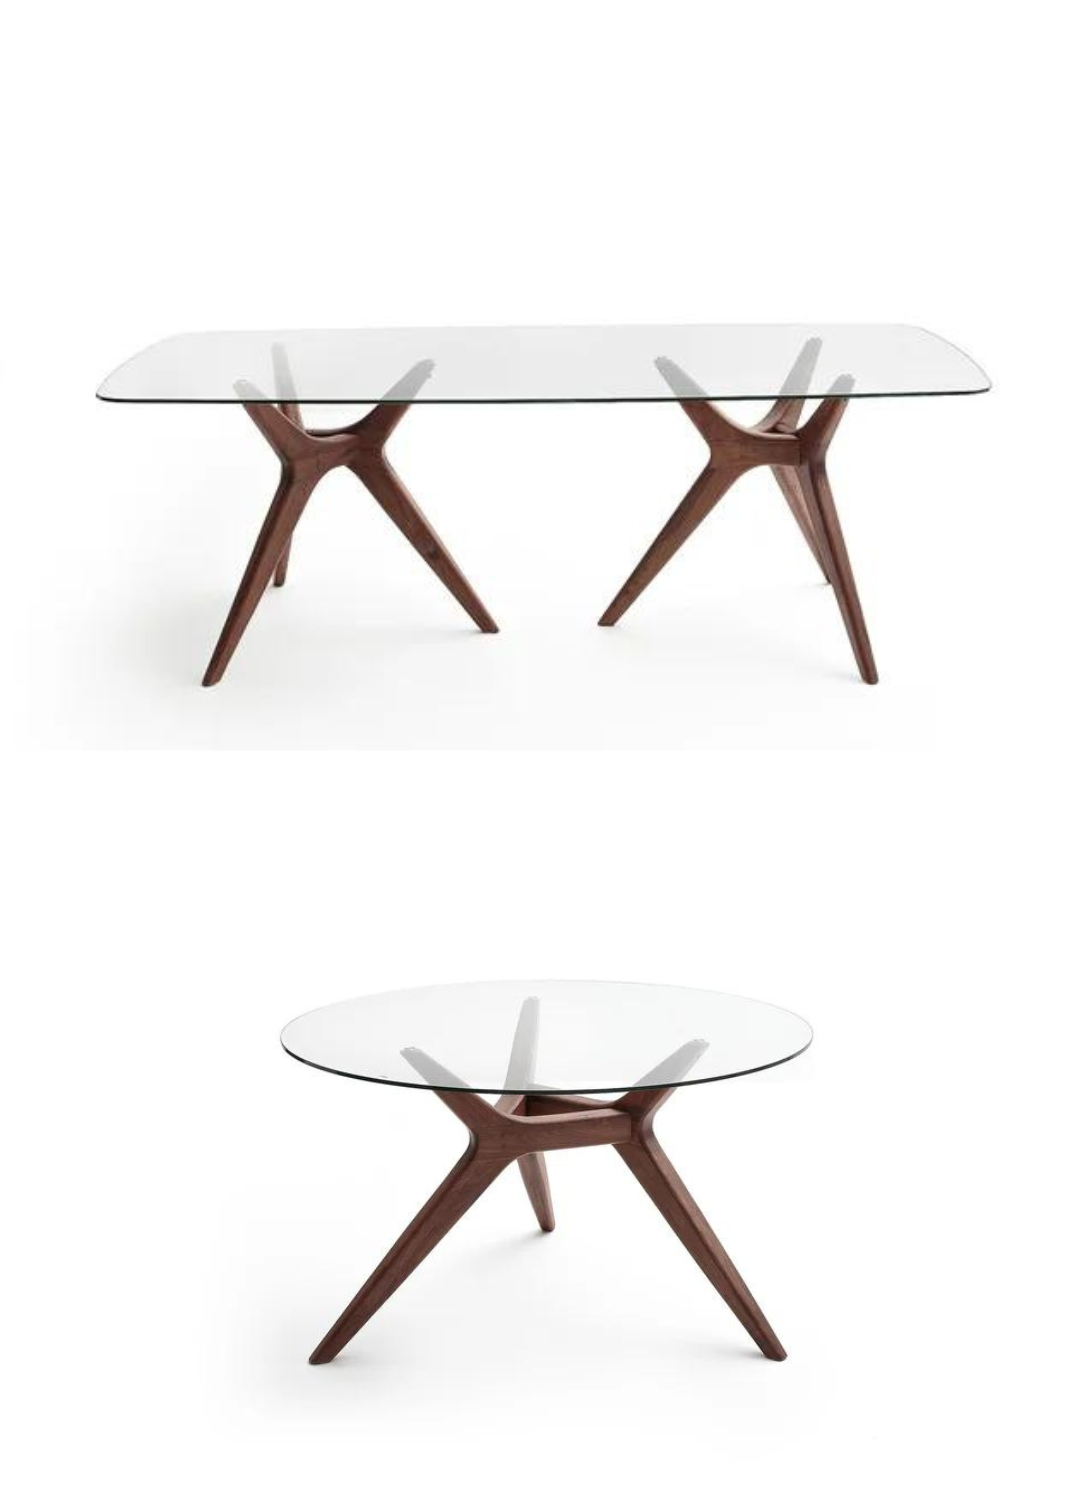 2 versions tables tréteaux originales rectangulaire et ronde